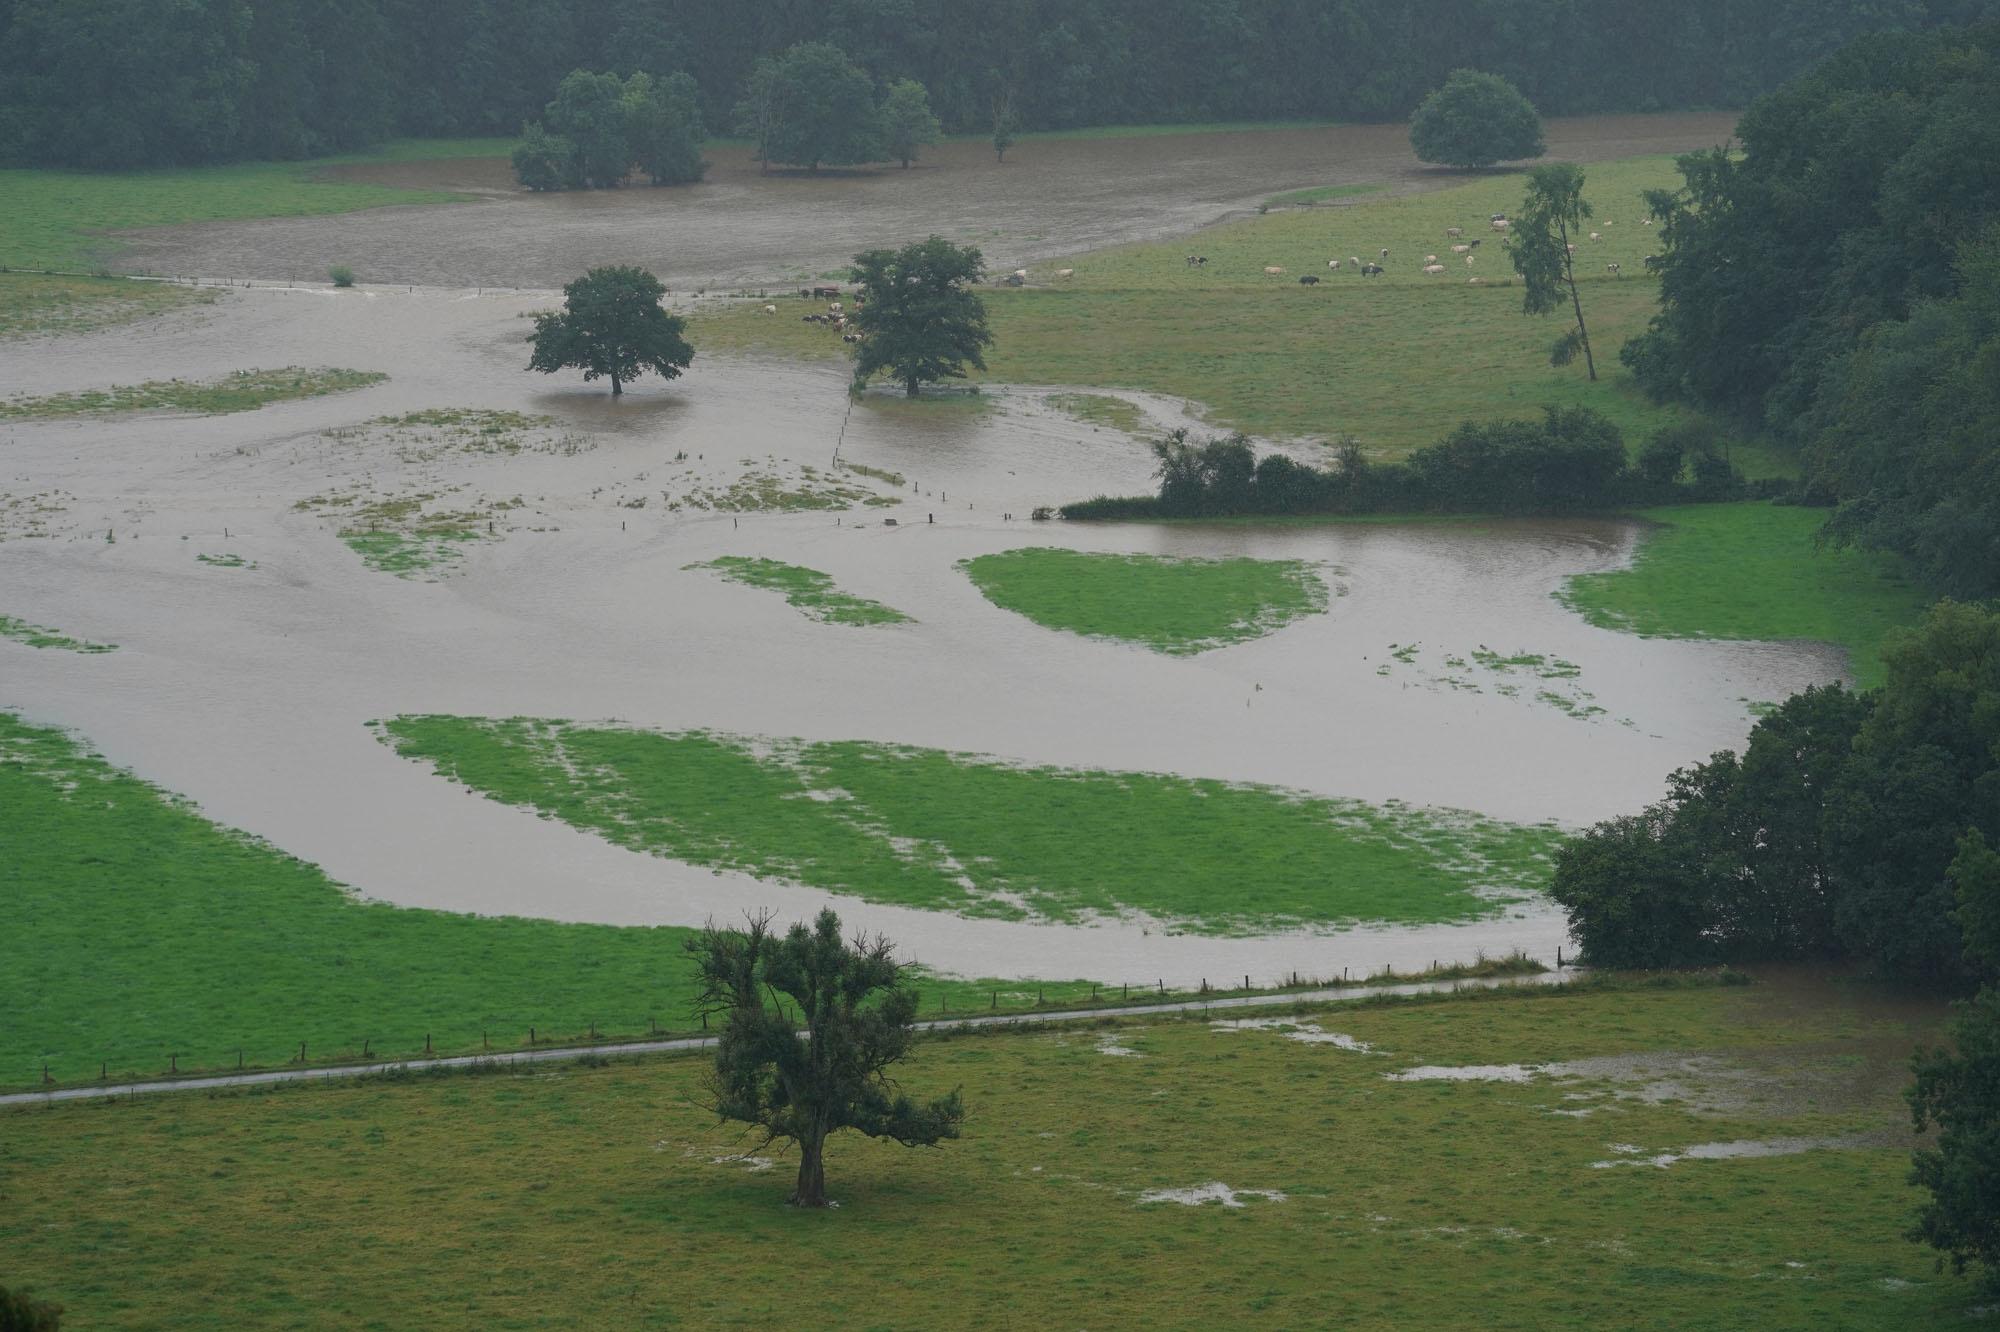 Intempéries: des cours d'eau sont sortis de leur lit, phase de crise dans plusieurs provinces (photos)